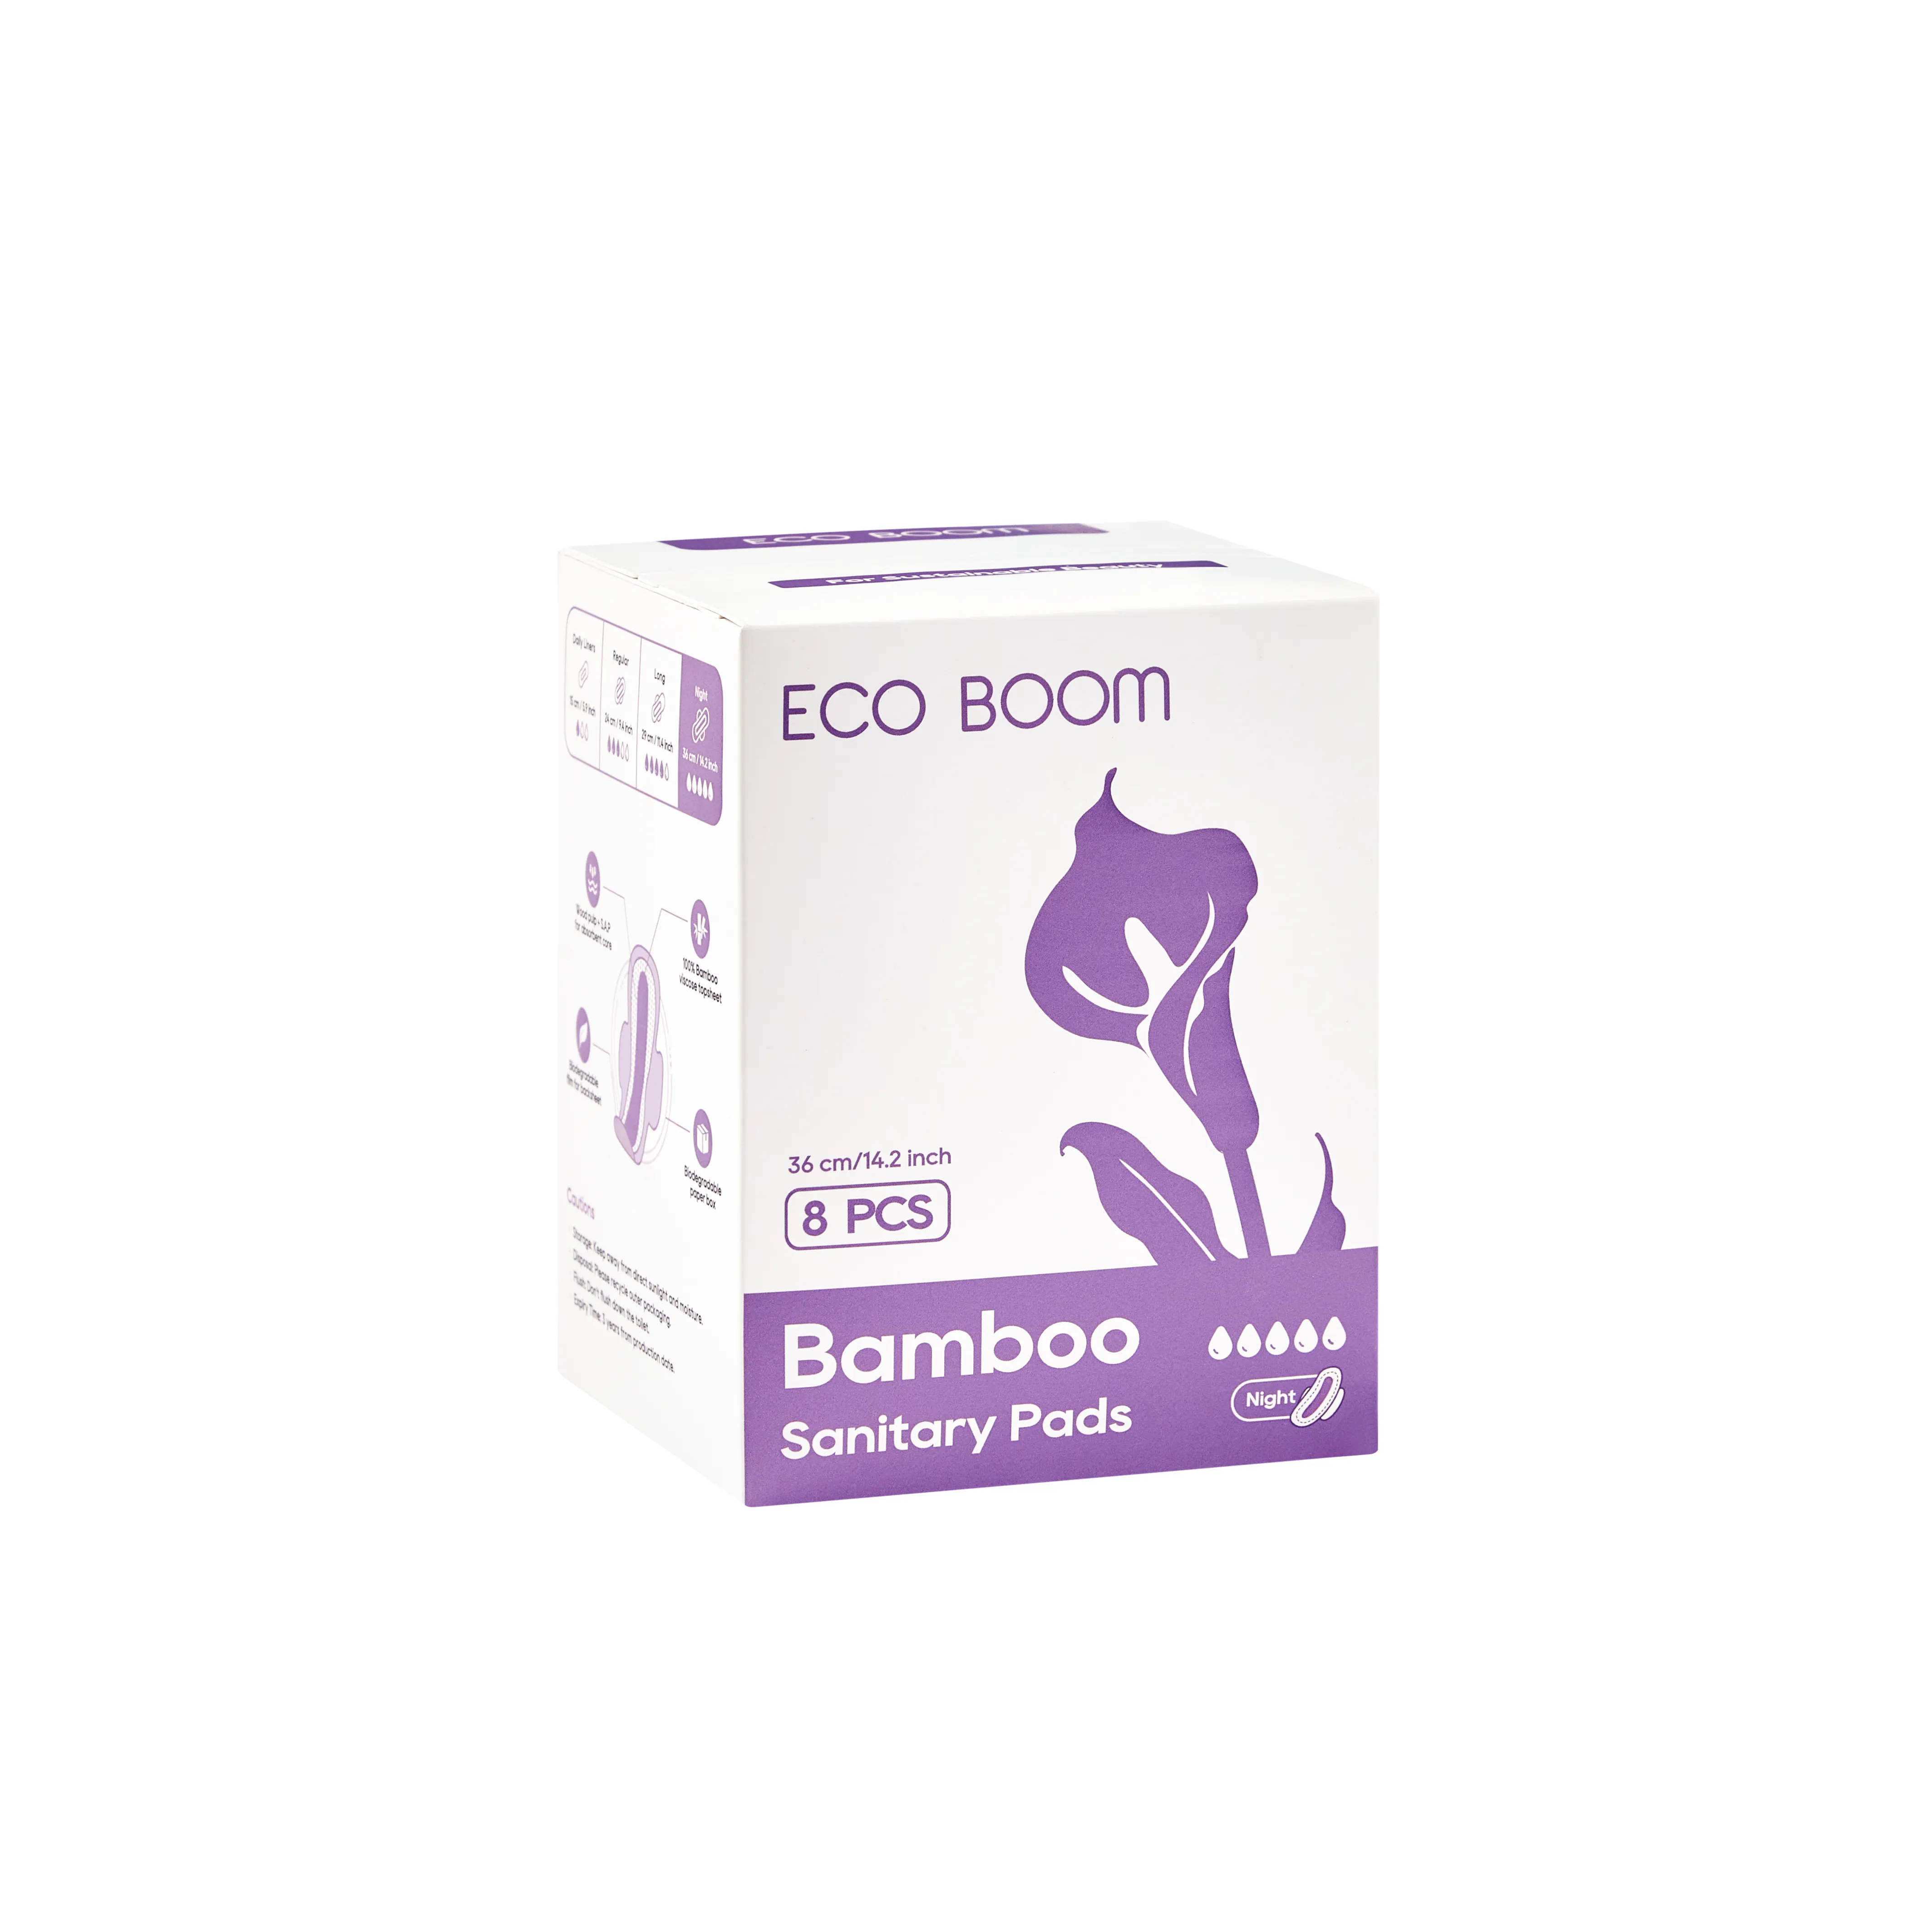 ECO BOOM מותאם אישית נשים בתפזורת תוחם תחתונים אורגניים מפית כותנה נשית כרית מחזור היגיינית לנשית